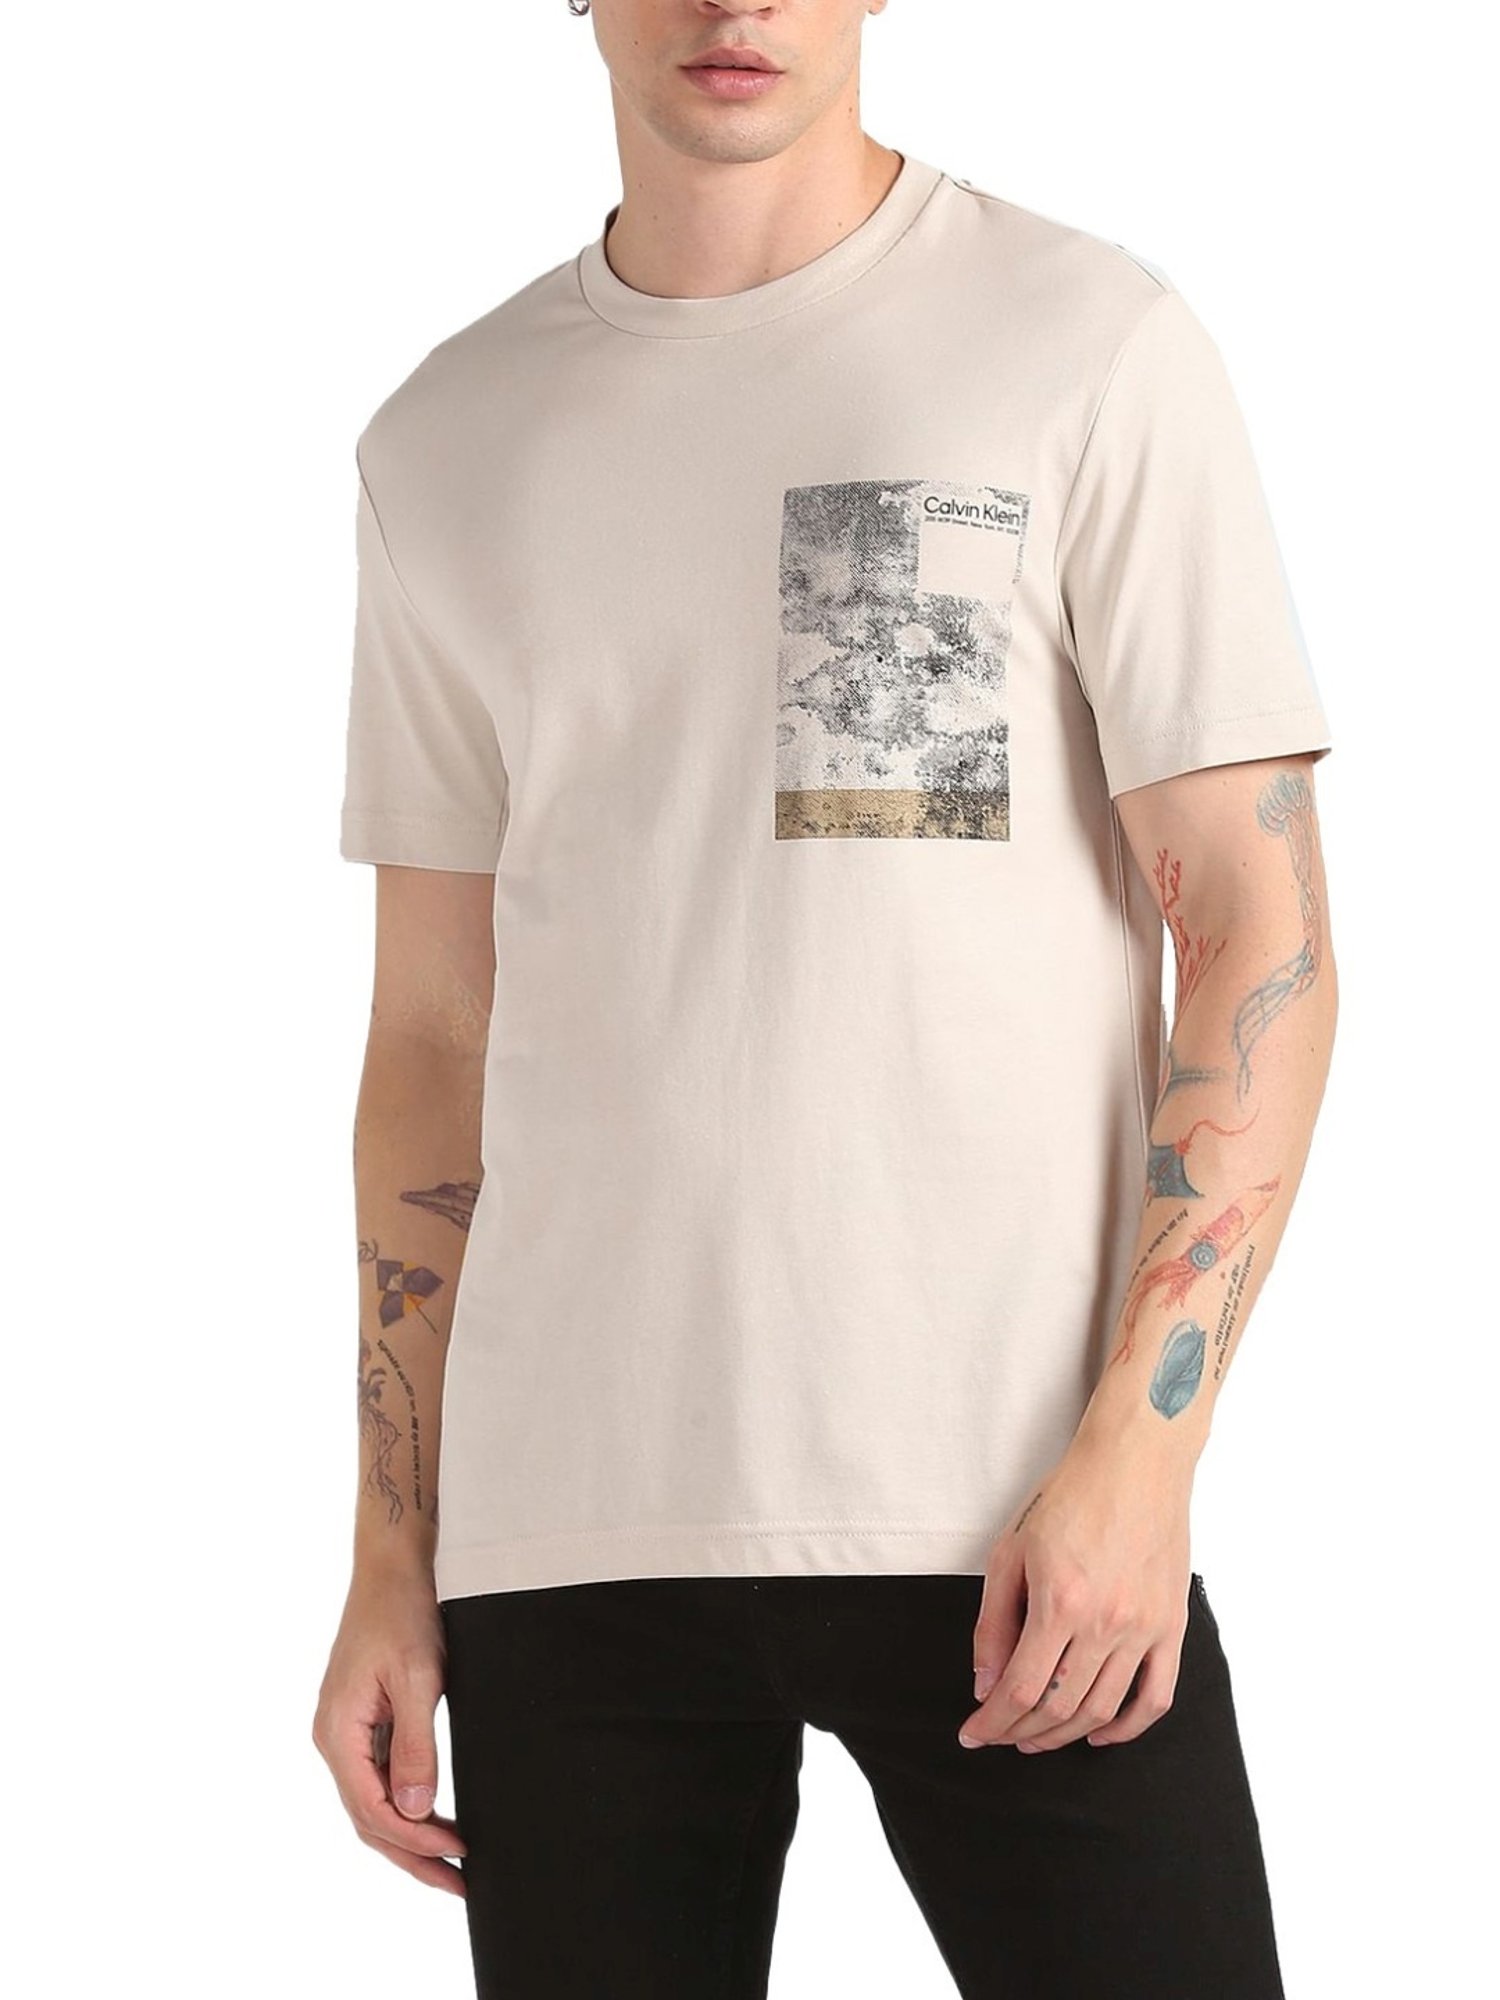 Calvin Klein - Beige Cotton T-Shirt